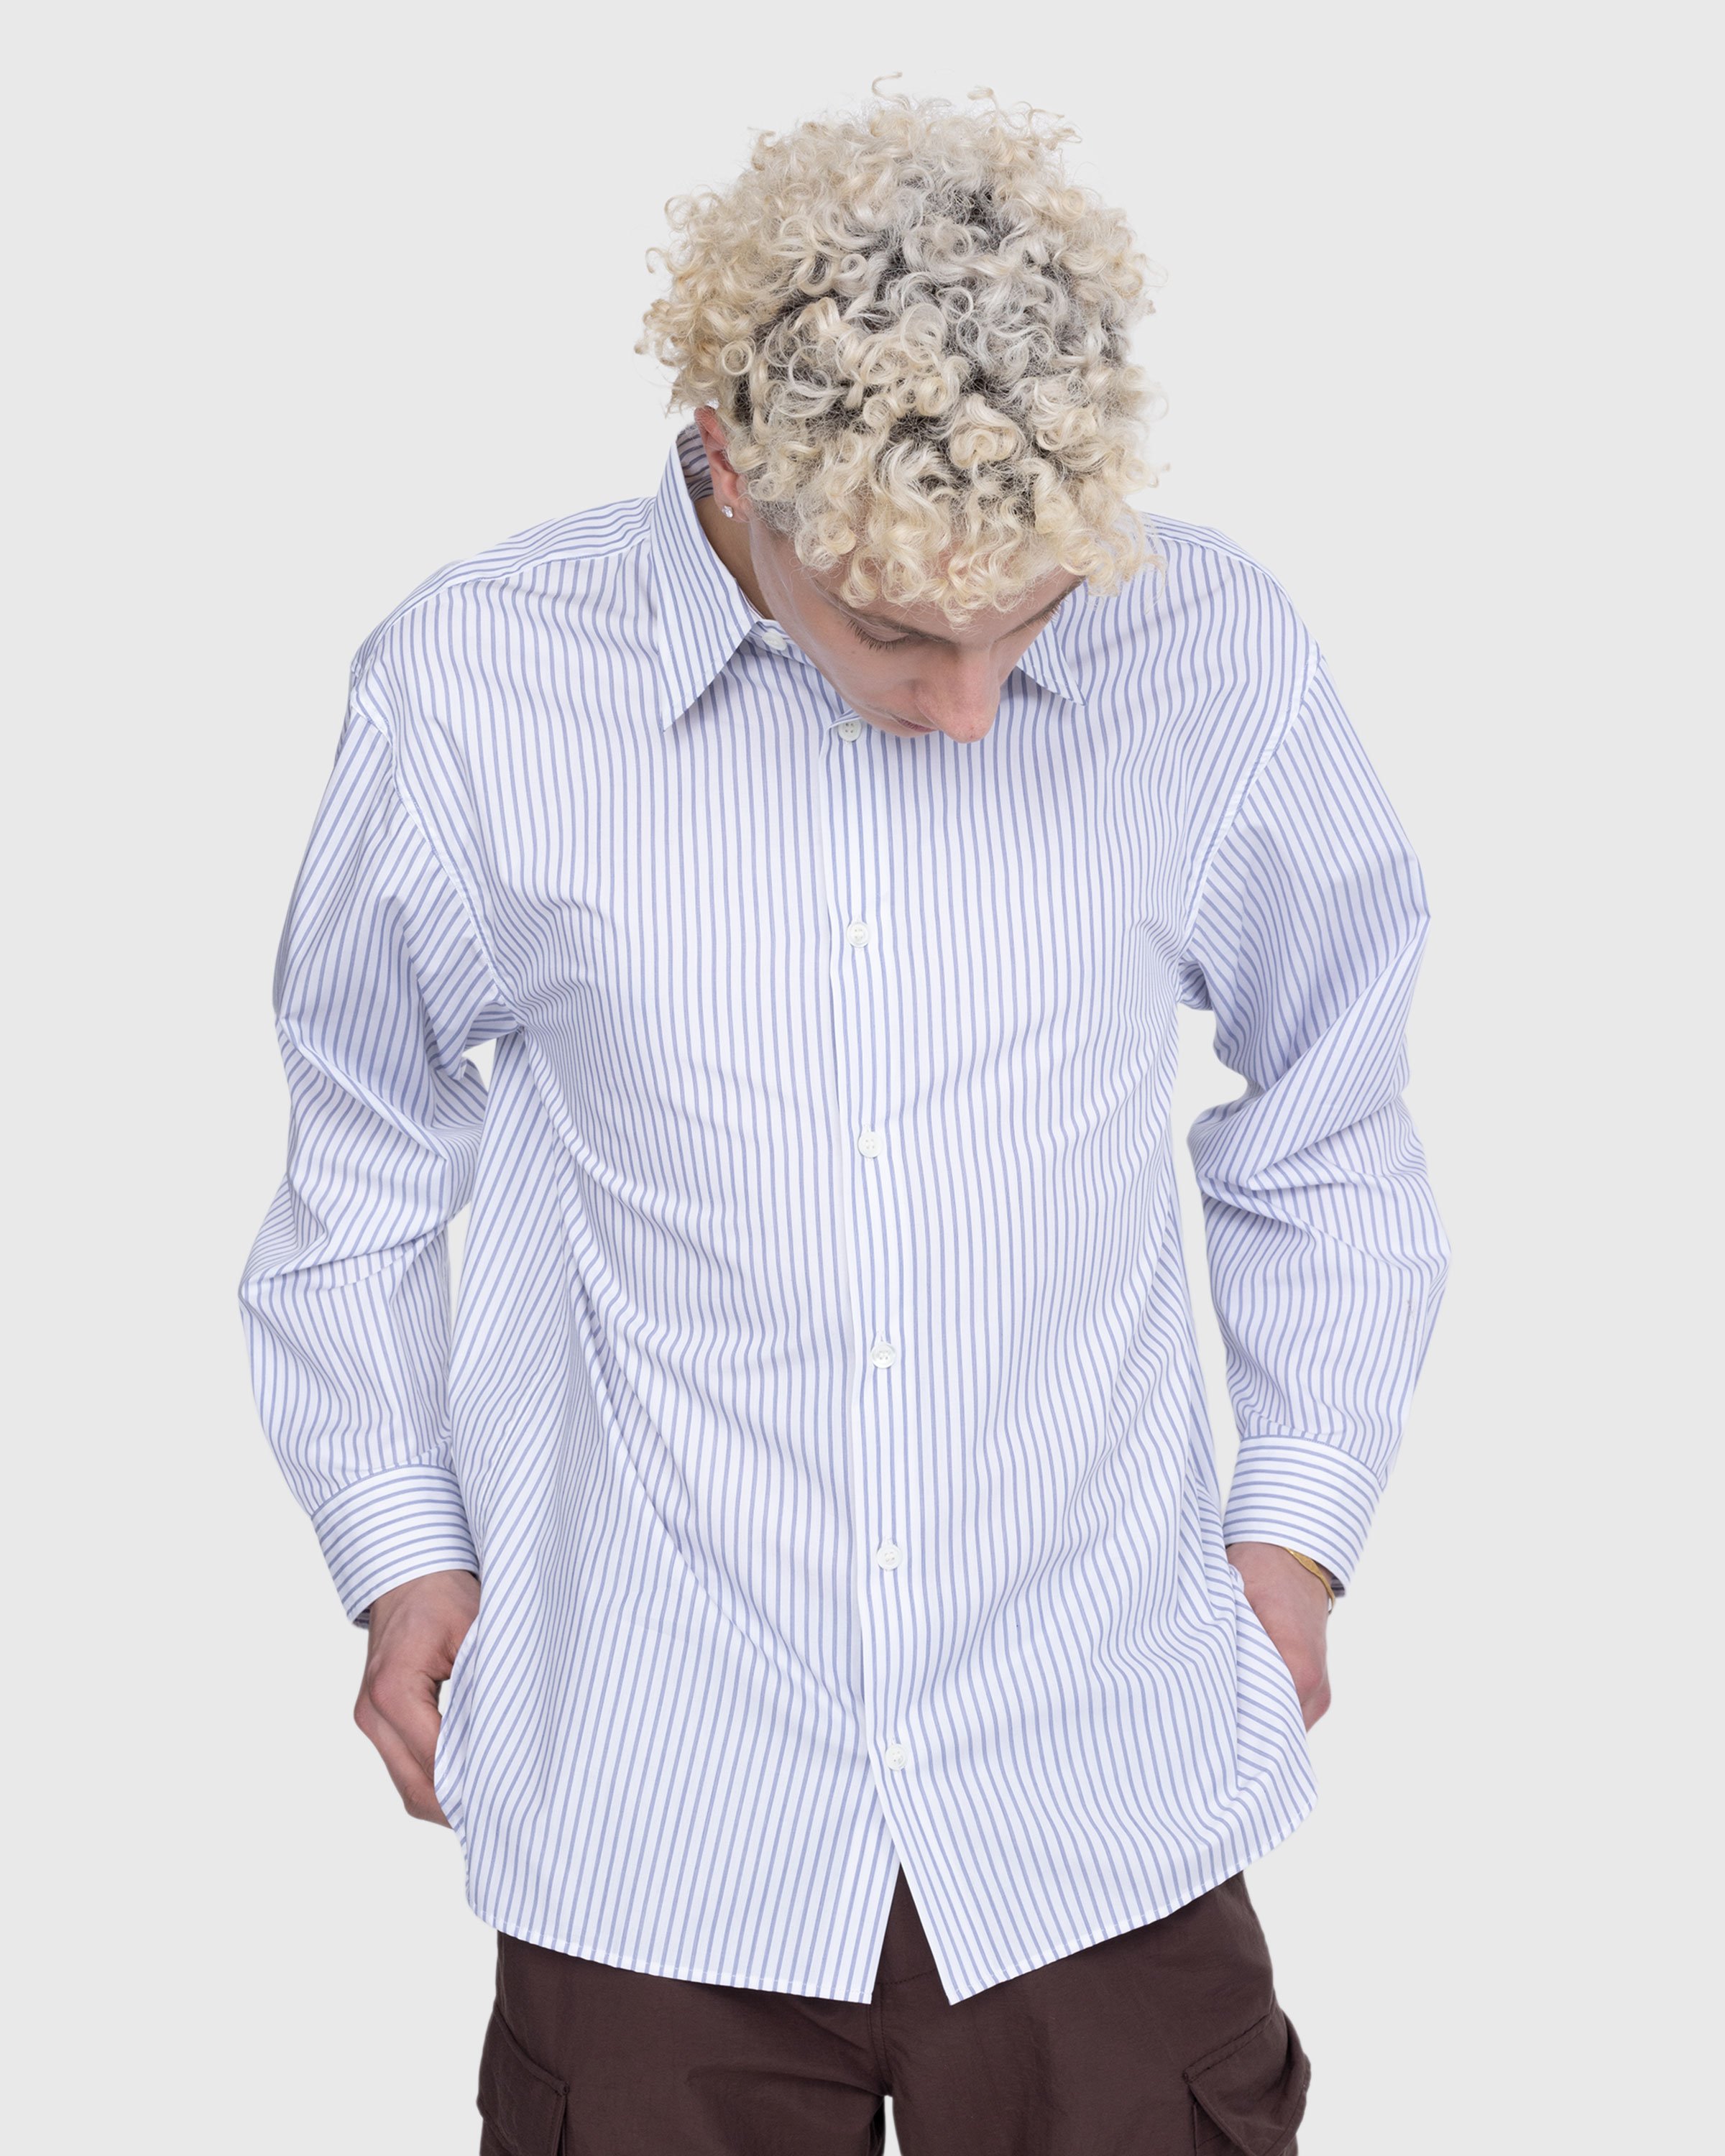 Dries van Noten - Croom Shirt White - Clothing - White - Image 5